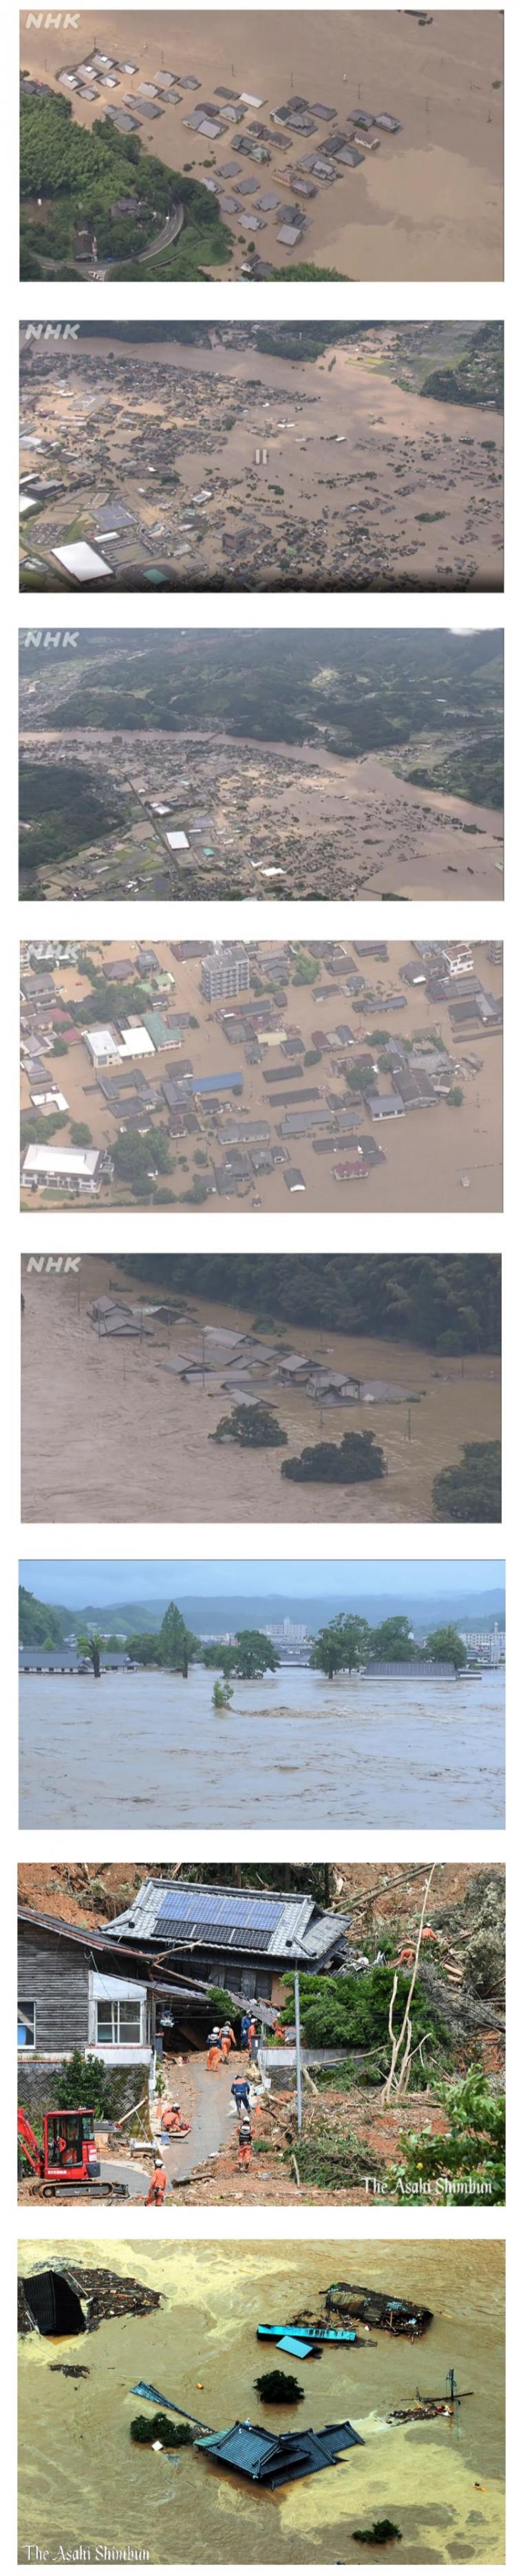 홍수로 난리난 일본 상황1.jpg